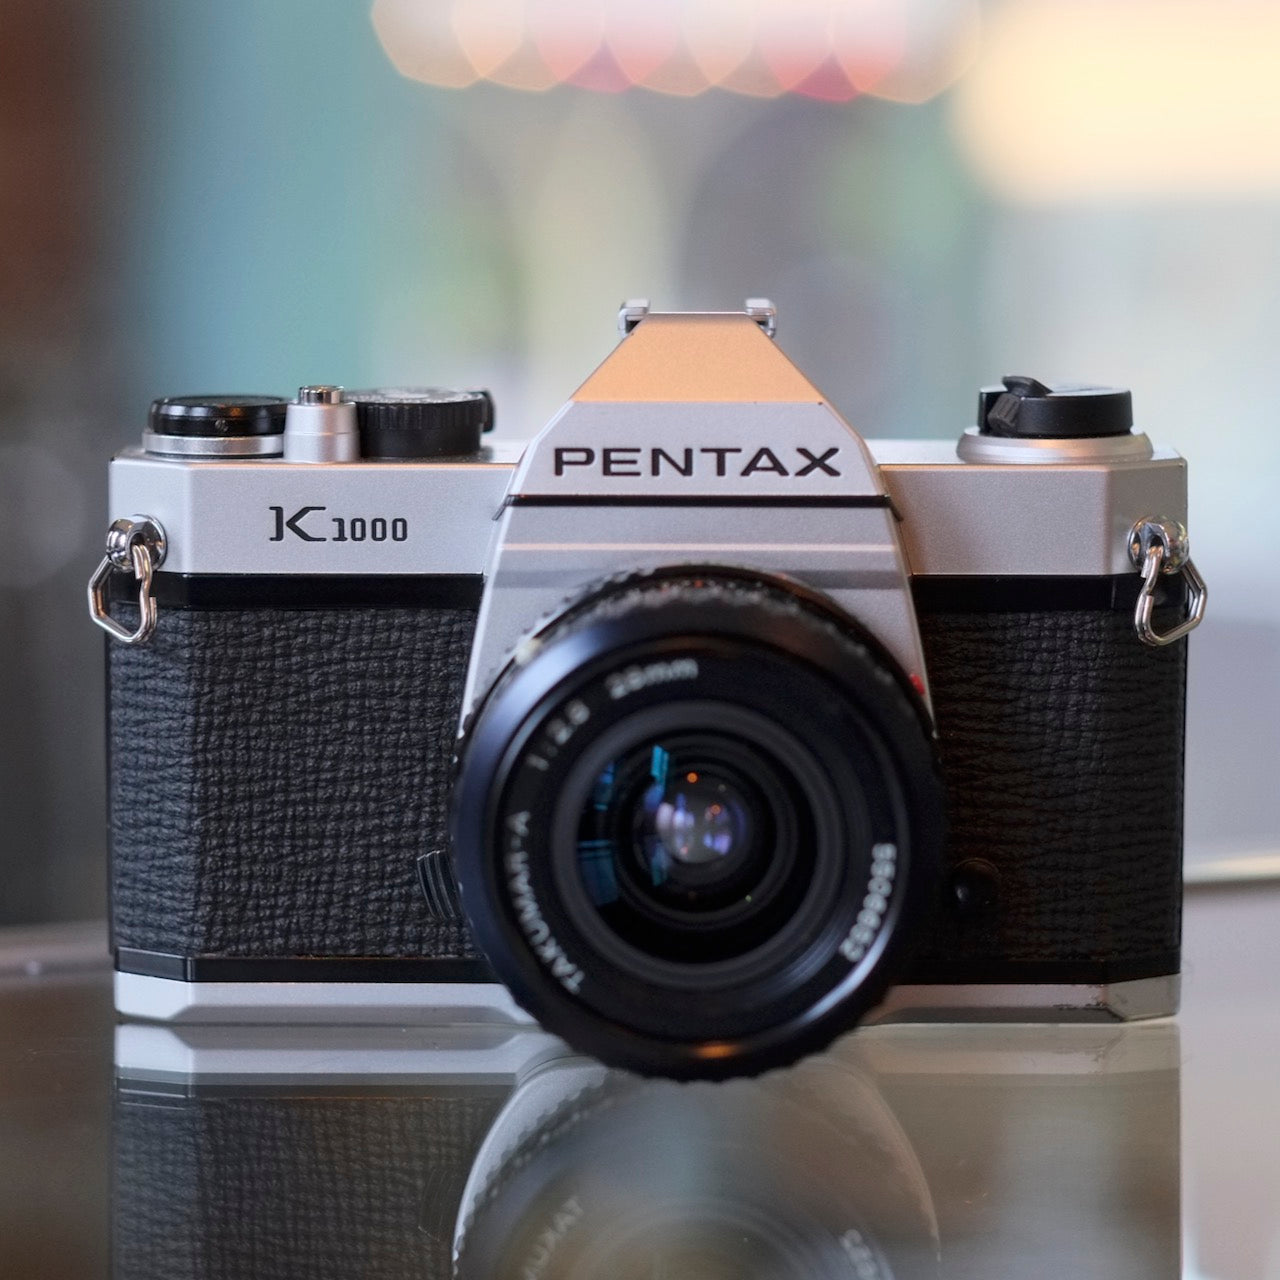 Pentax K1000 with Takumar-A 28mm f2.8